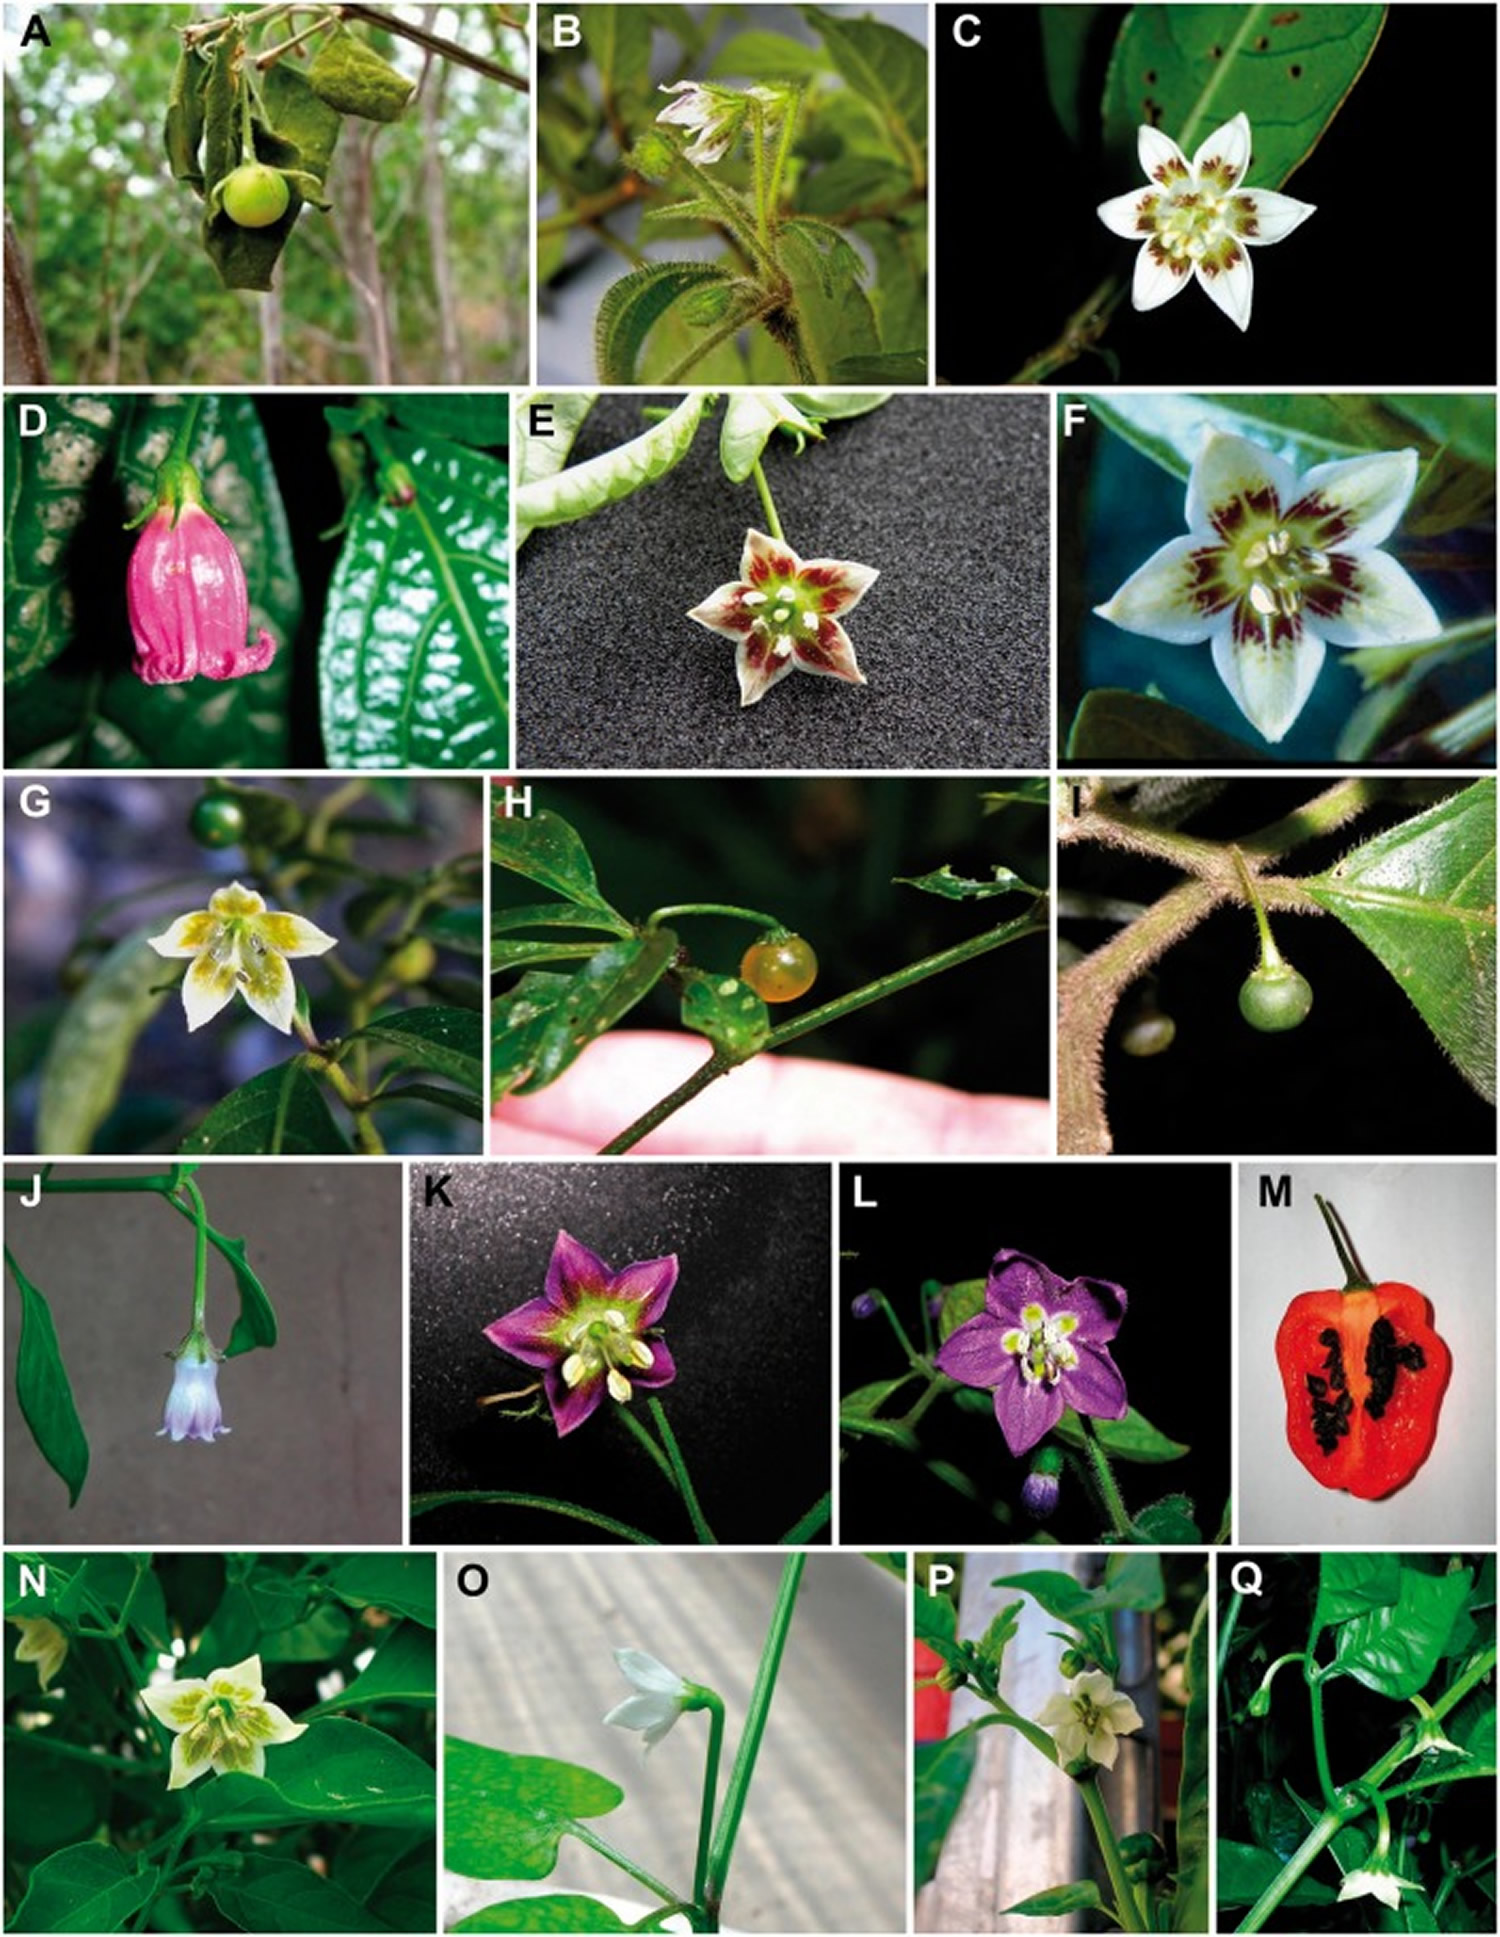 Flowers and fruits of the Longidentatum capsicum